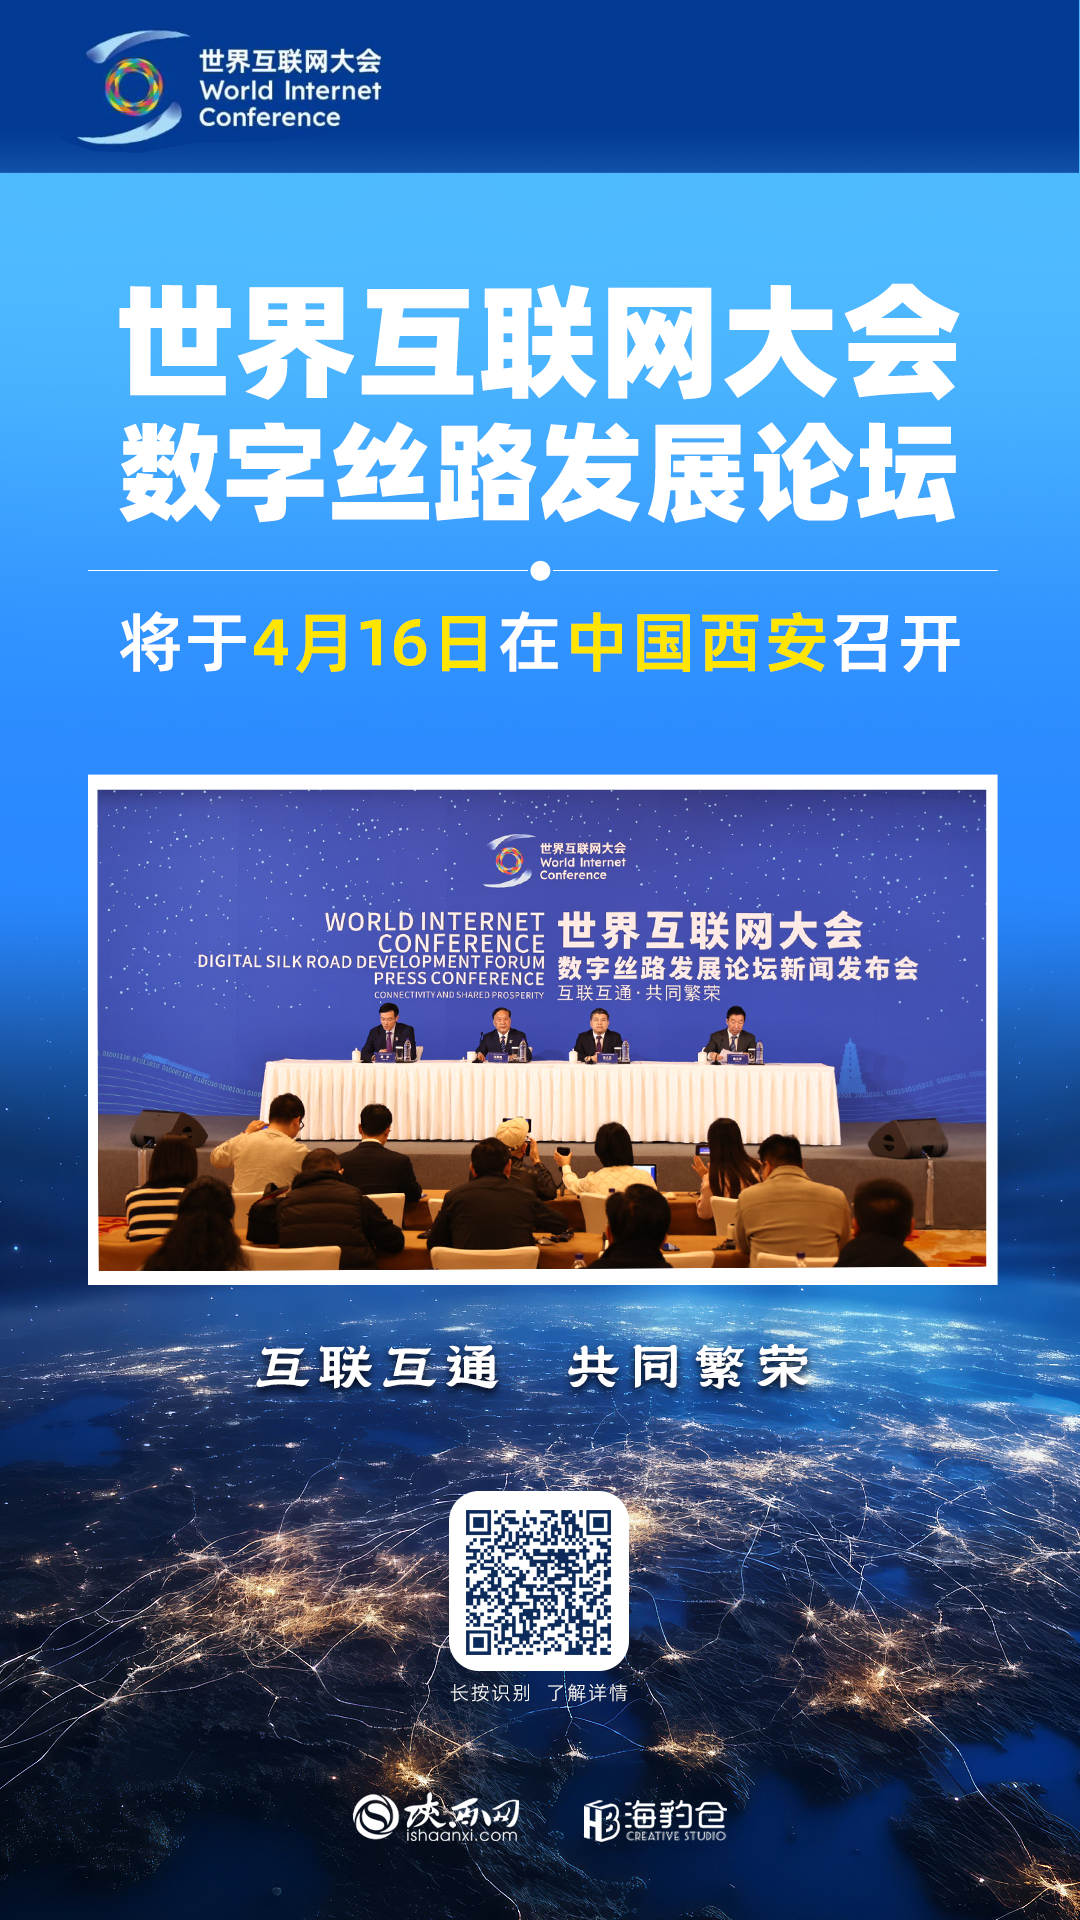 海报 | 世界互联网大会数字丝路发展论坛将于4月16日在西安召开